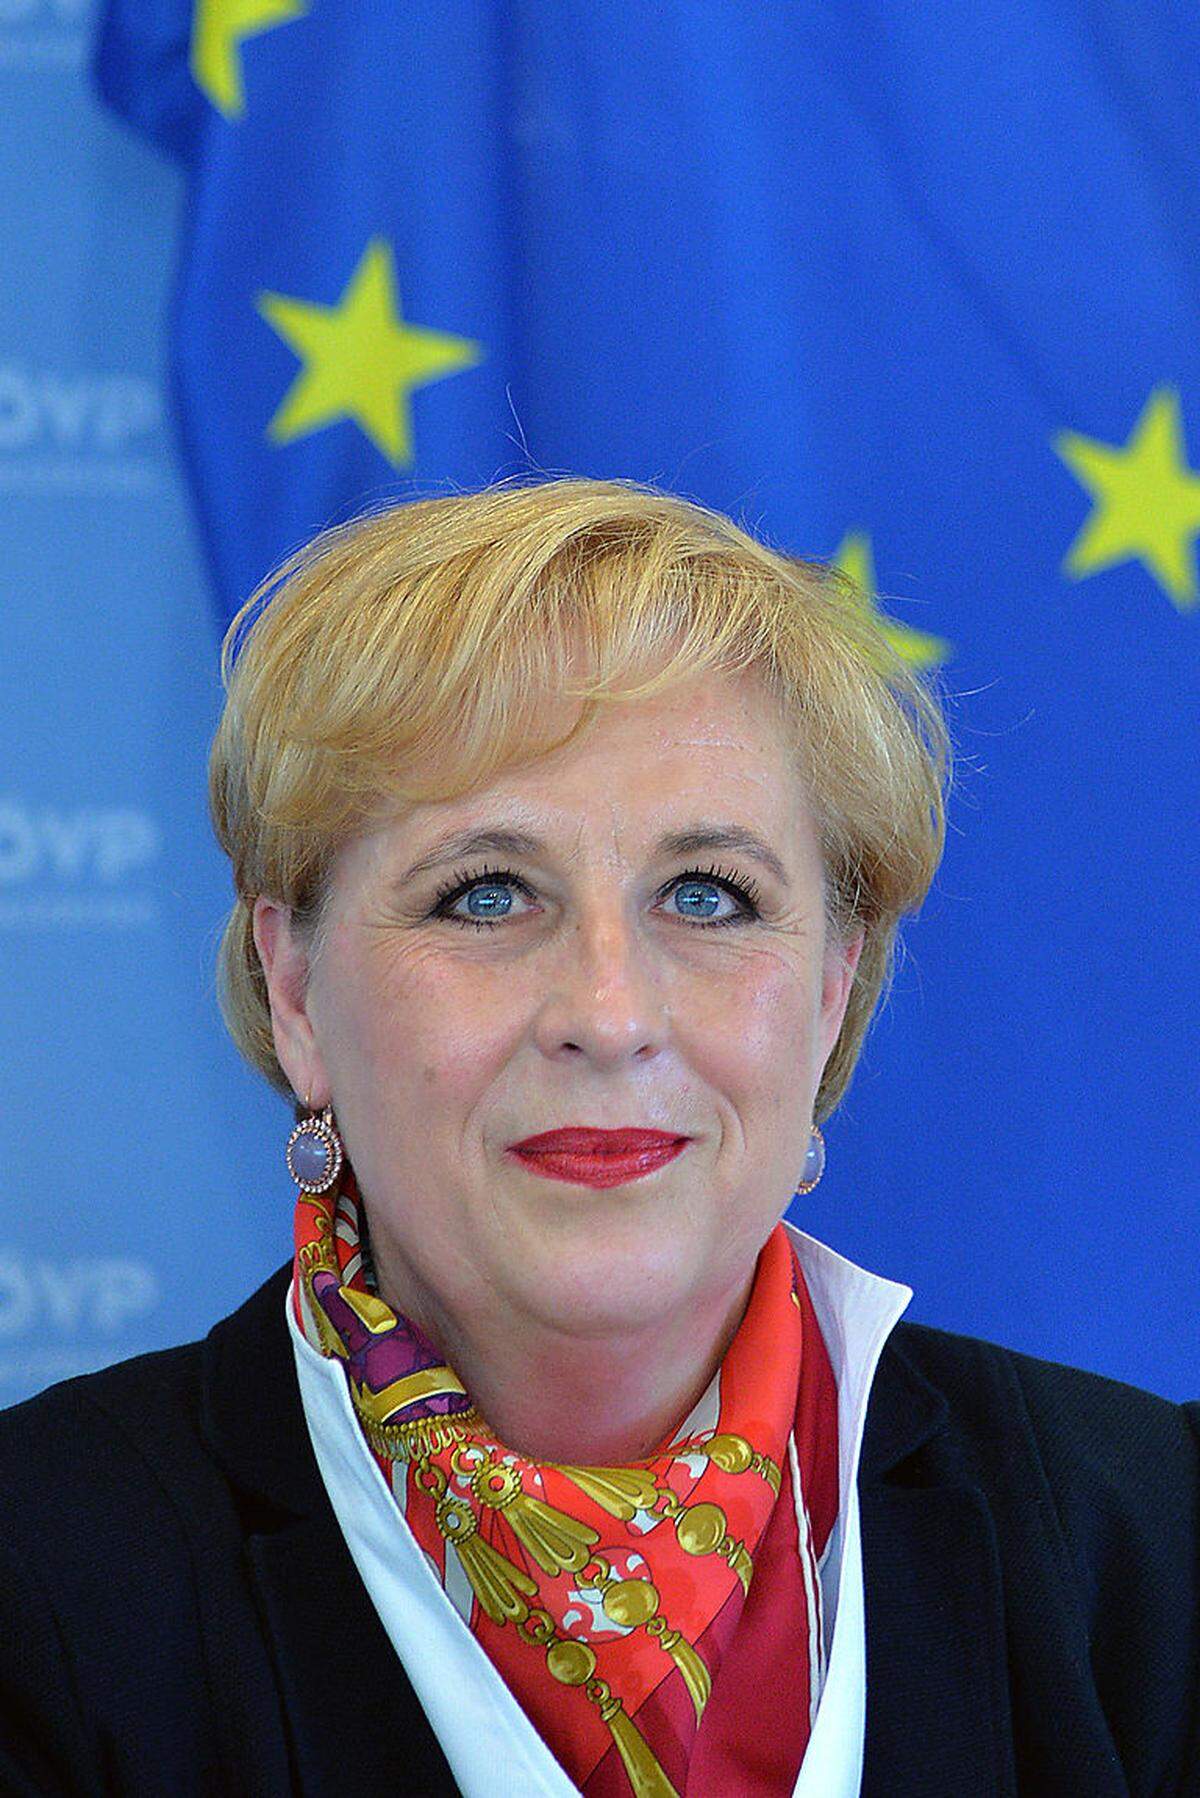 Die Salzburgerin kandidiert erstmals für das Europaparlament. Sie war bisher im Salzburger Gemeinderat tätig, wo sie für Sozialfragen zuständig war, bevor sie als Baustadträtin agierte.